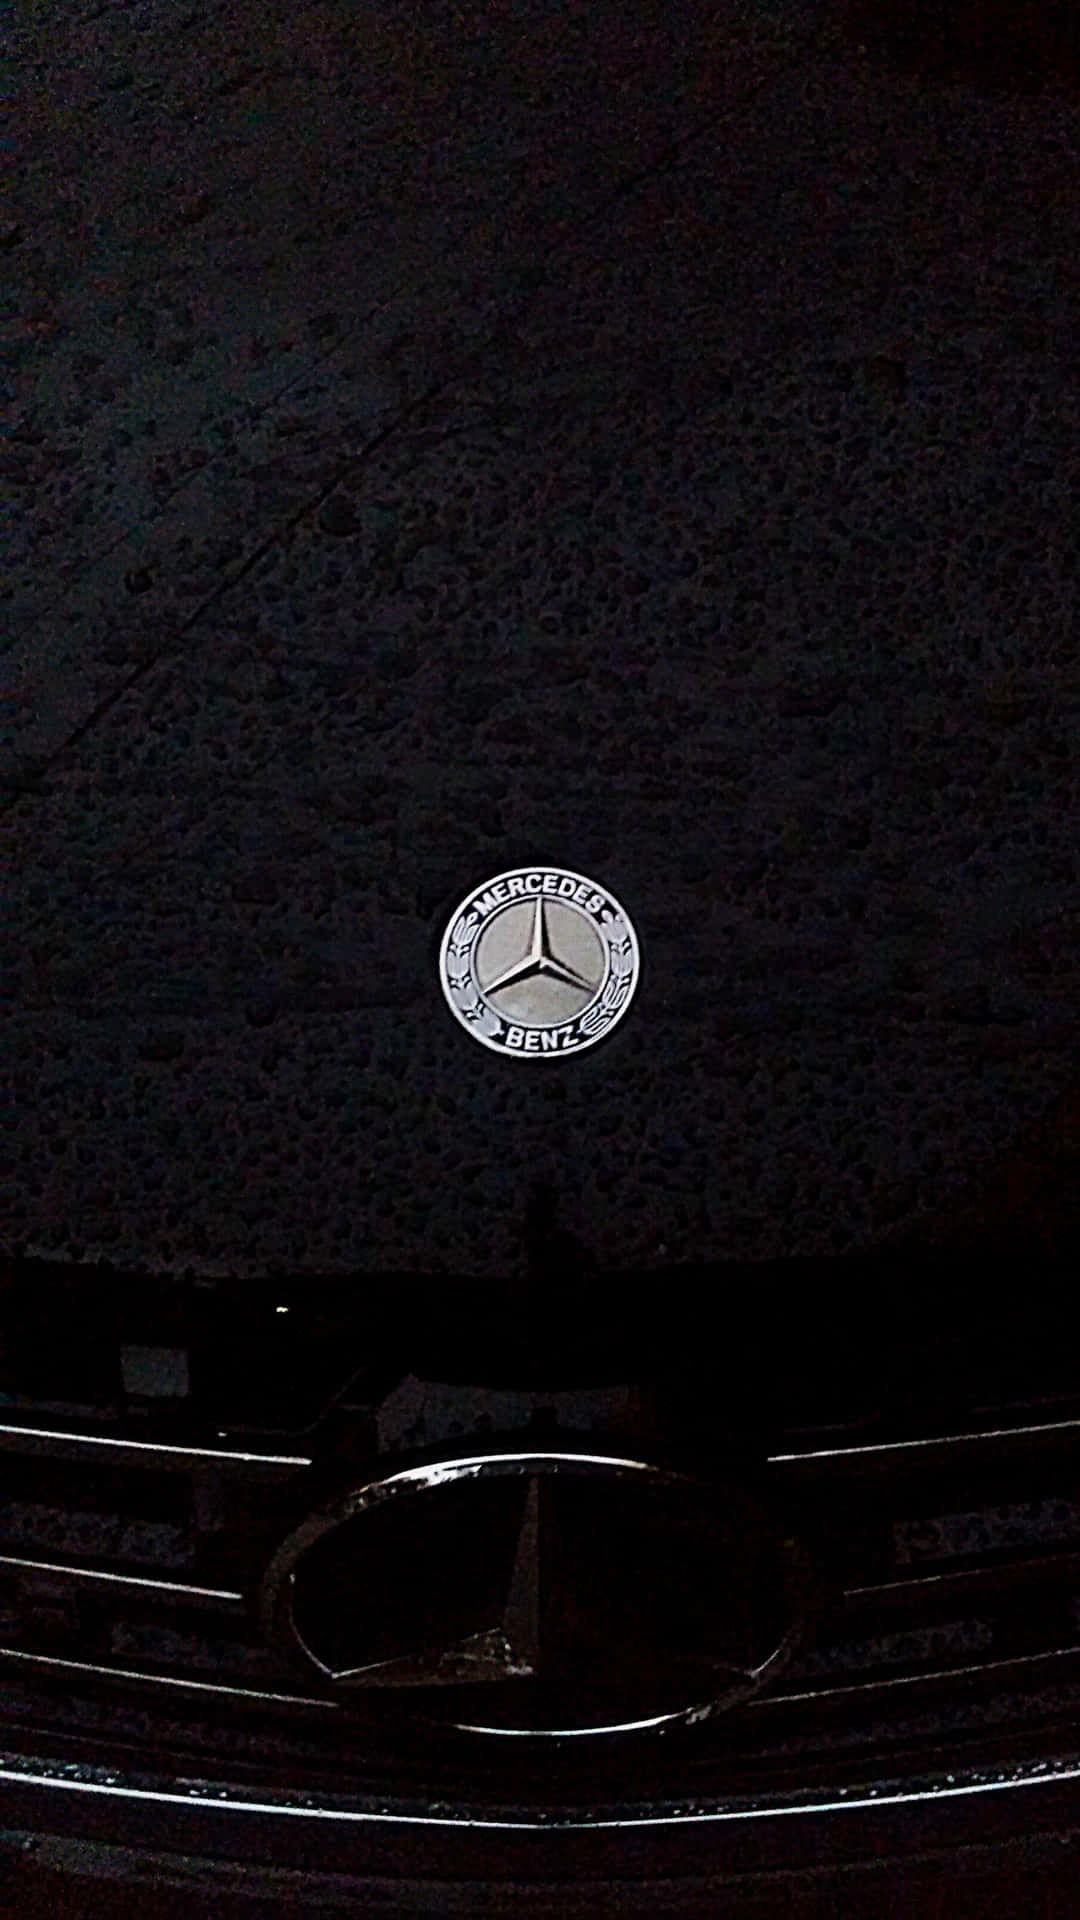 Mercedesbenz Logotyp